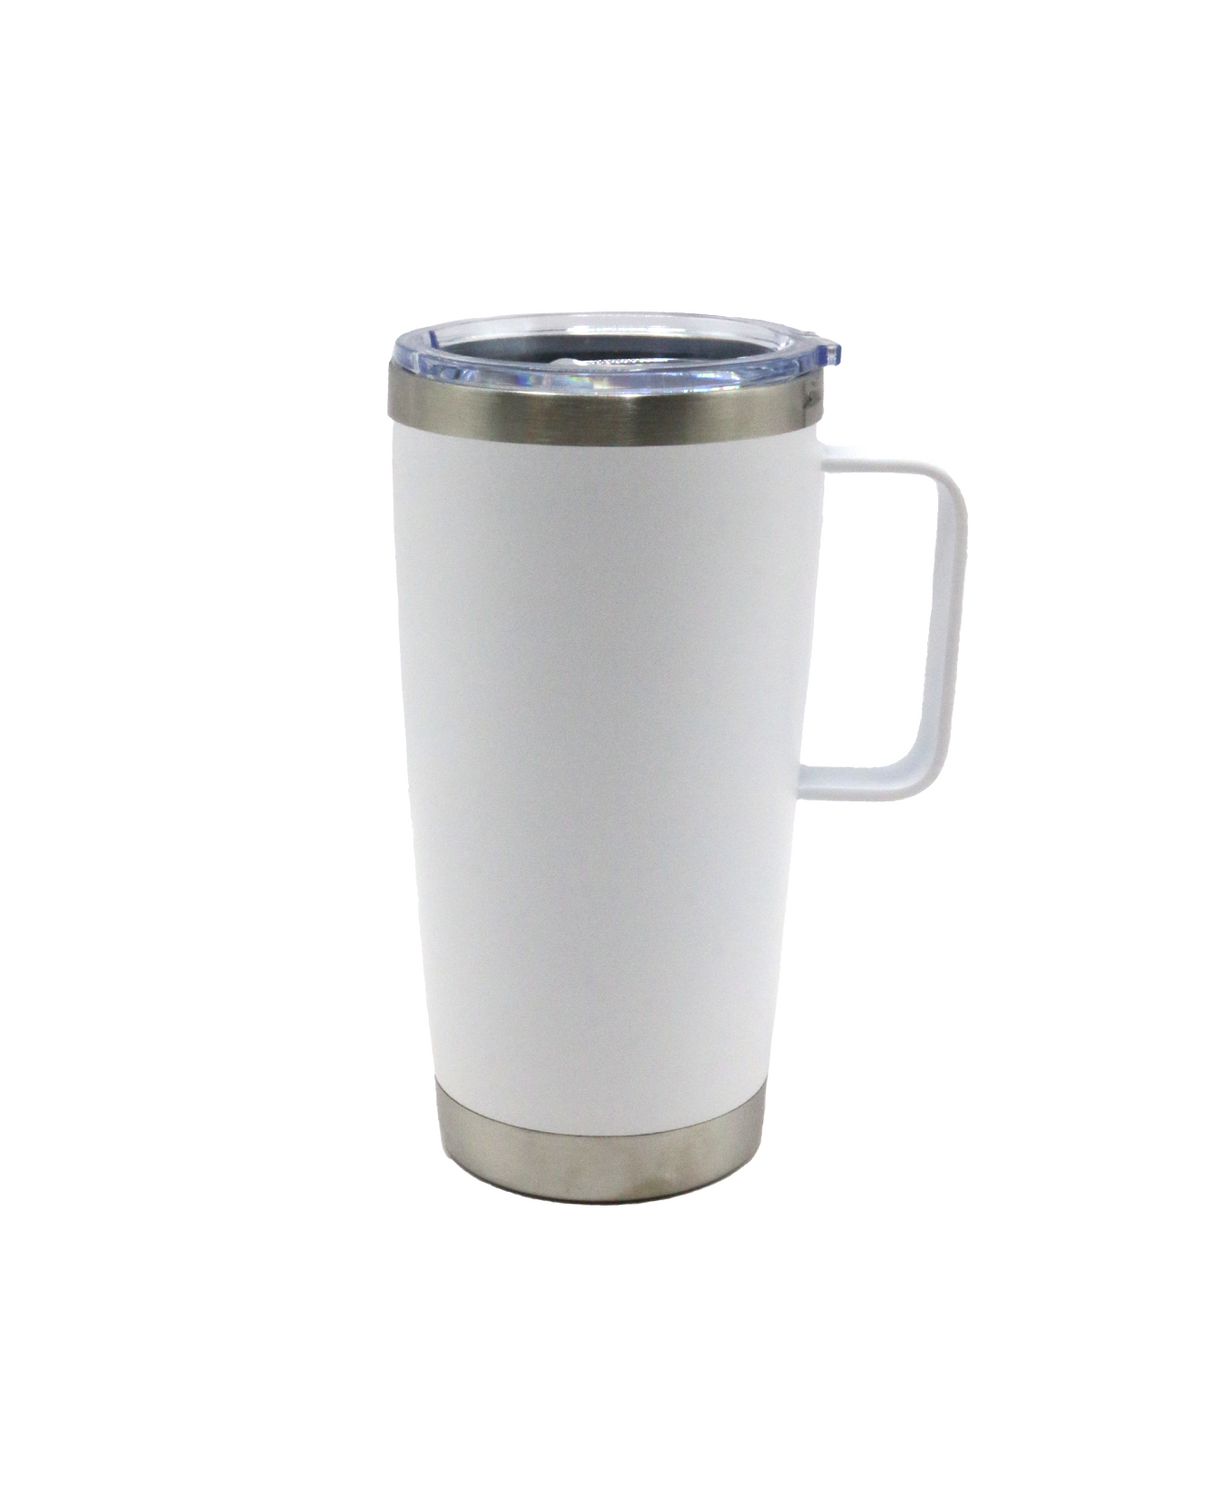 hot & cold mug 500ml china d979